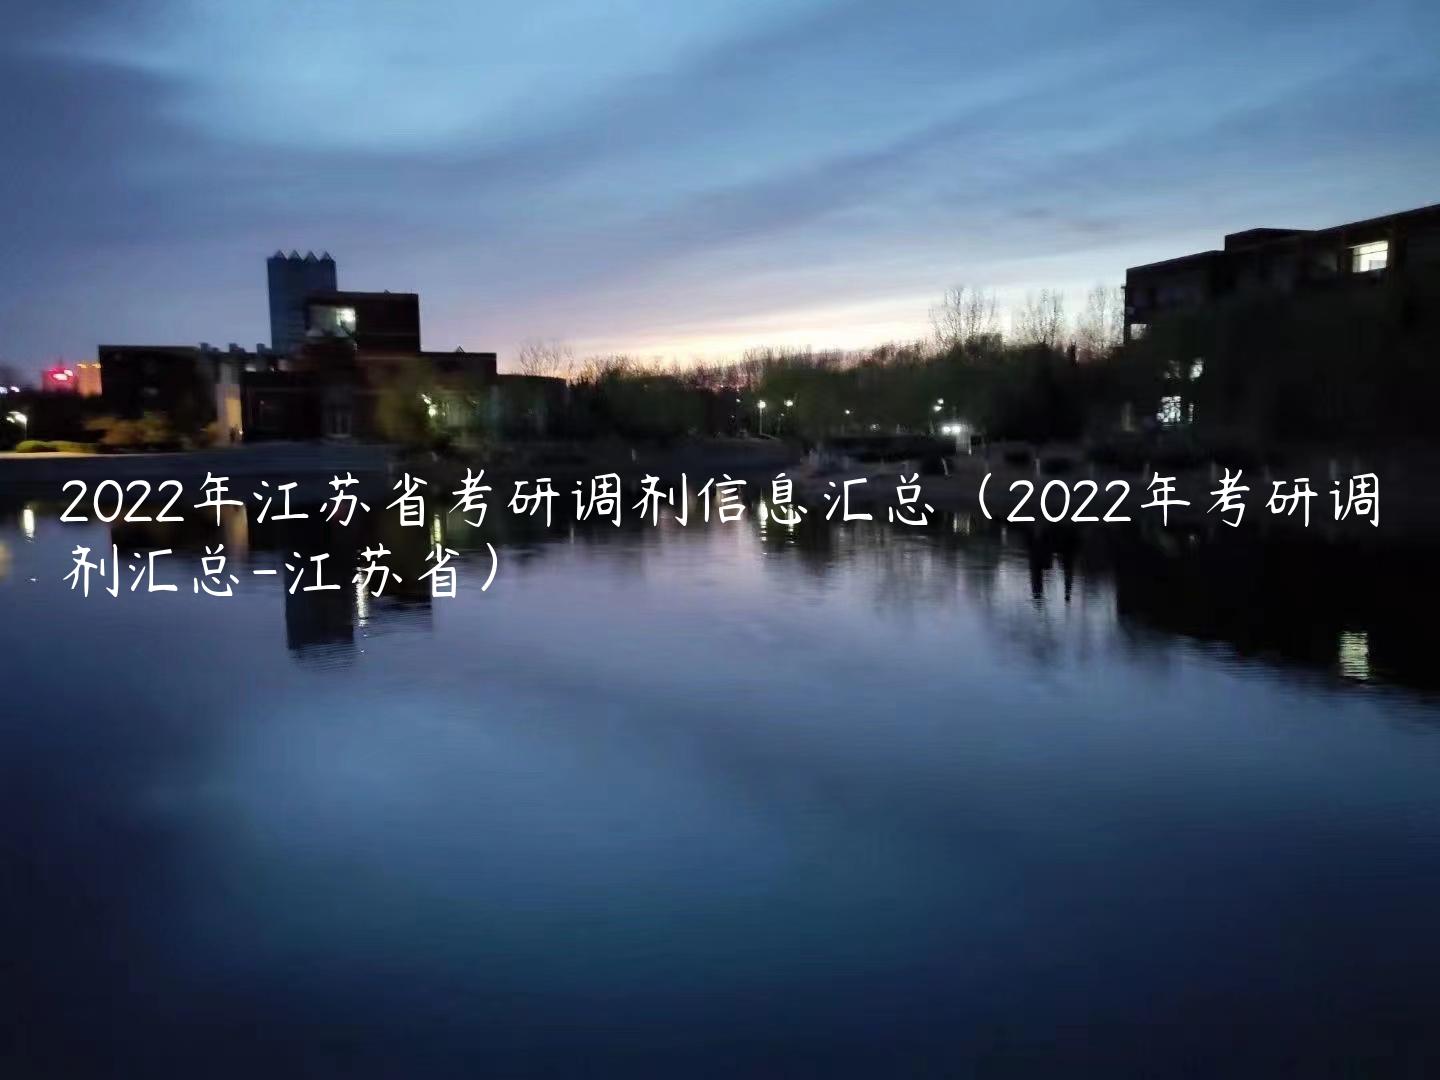 2022年江苏省考研调剂信息汇总（2022年考研调剂汇总-江苏省）